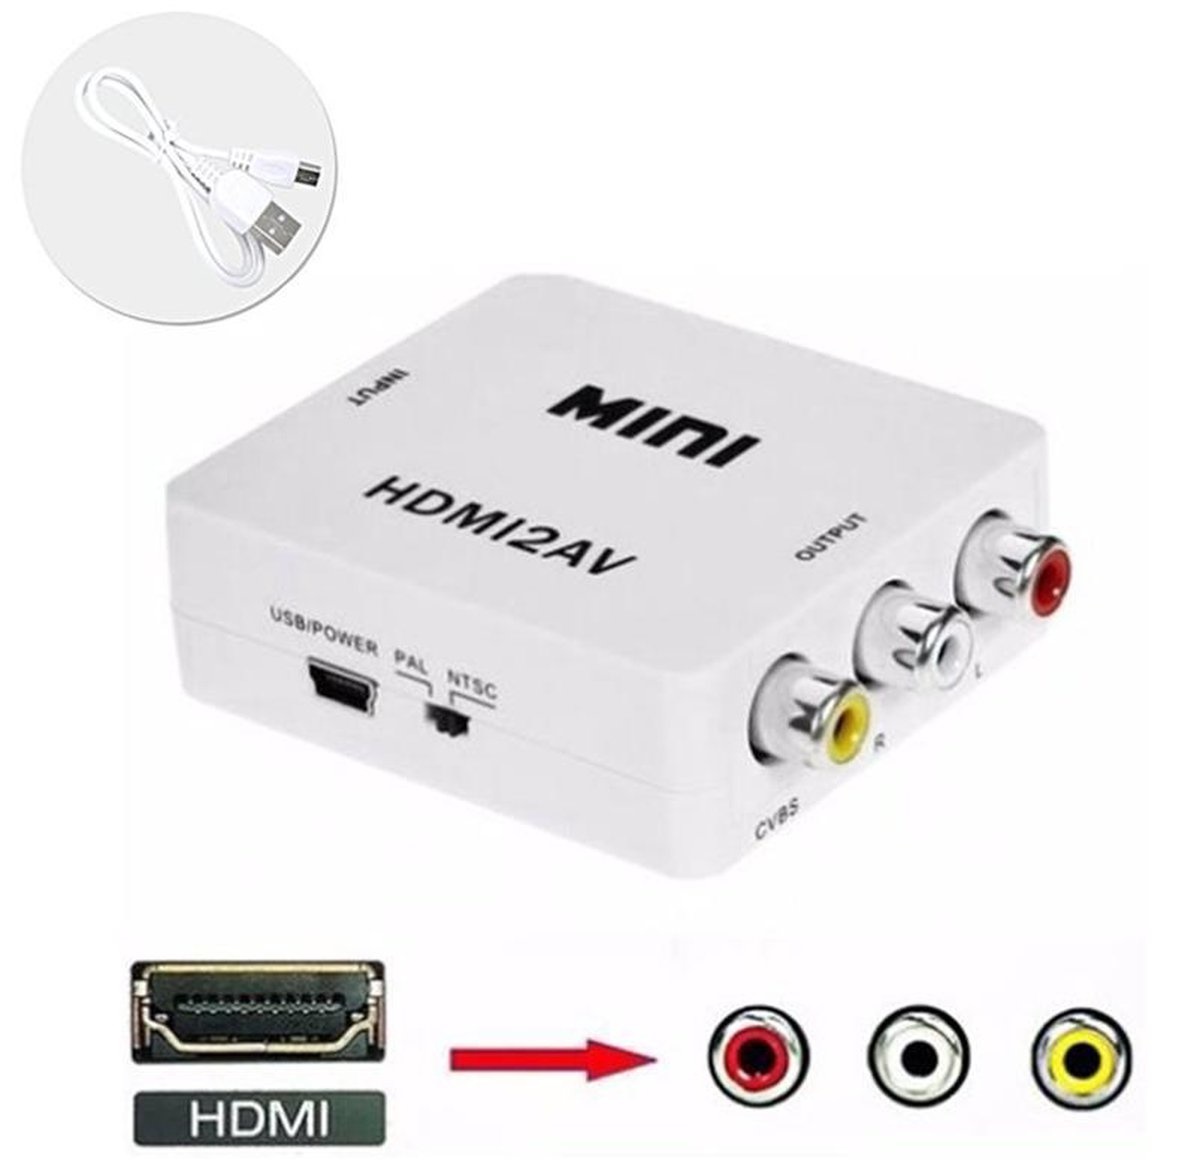 HDMI AV Adapter - 1080p HD Wit Case2go.nl